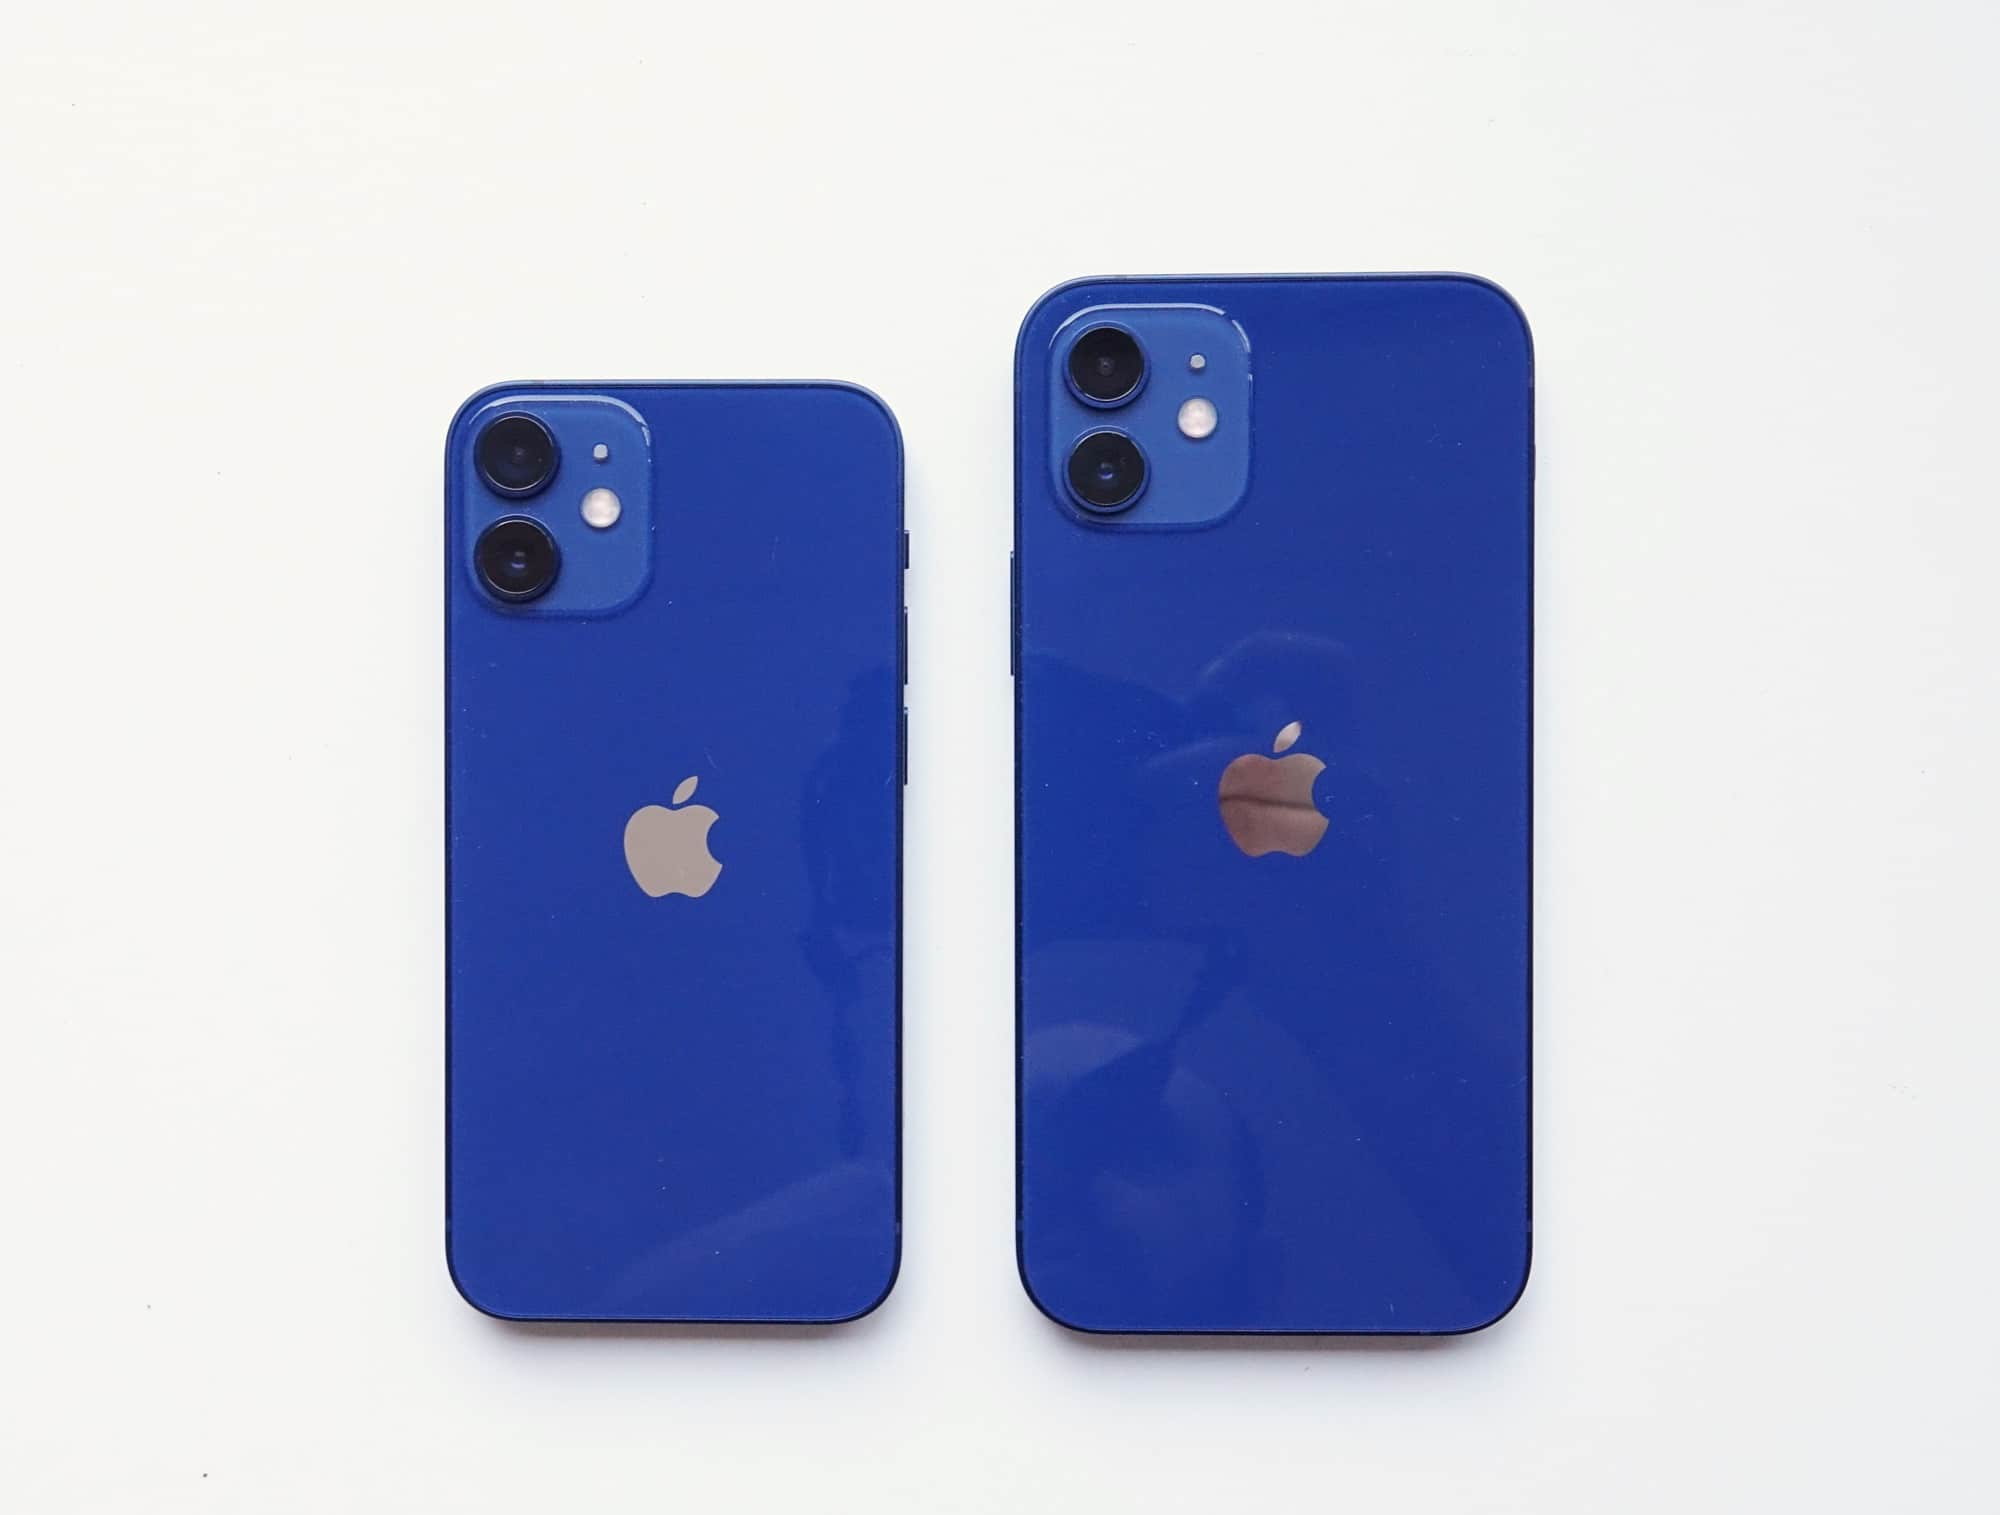 iPhone 12 Mini (left) versus the iPhone 12 (right)